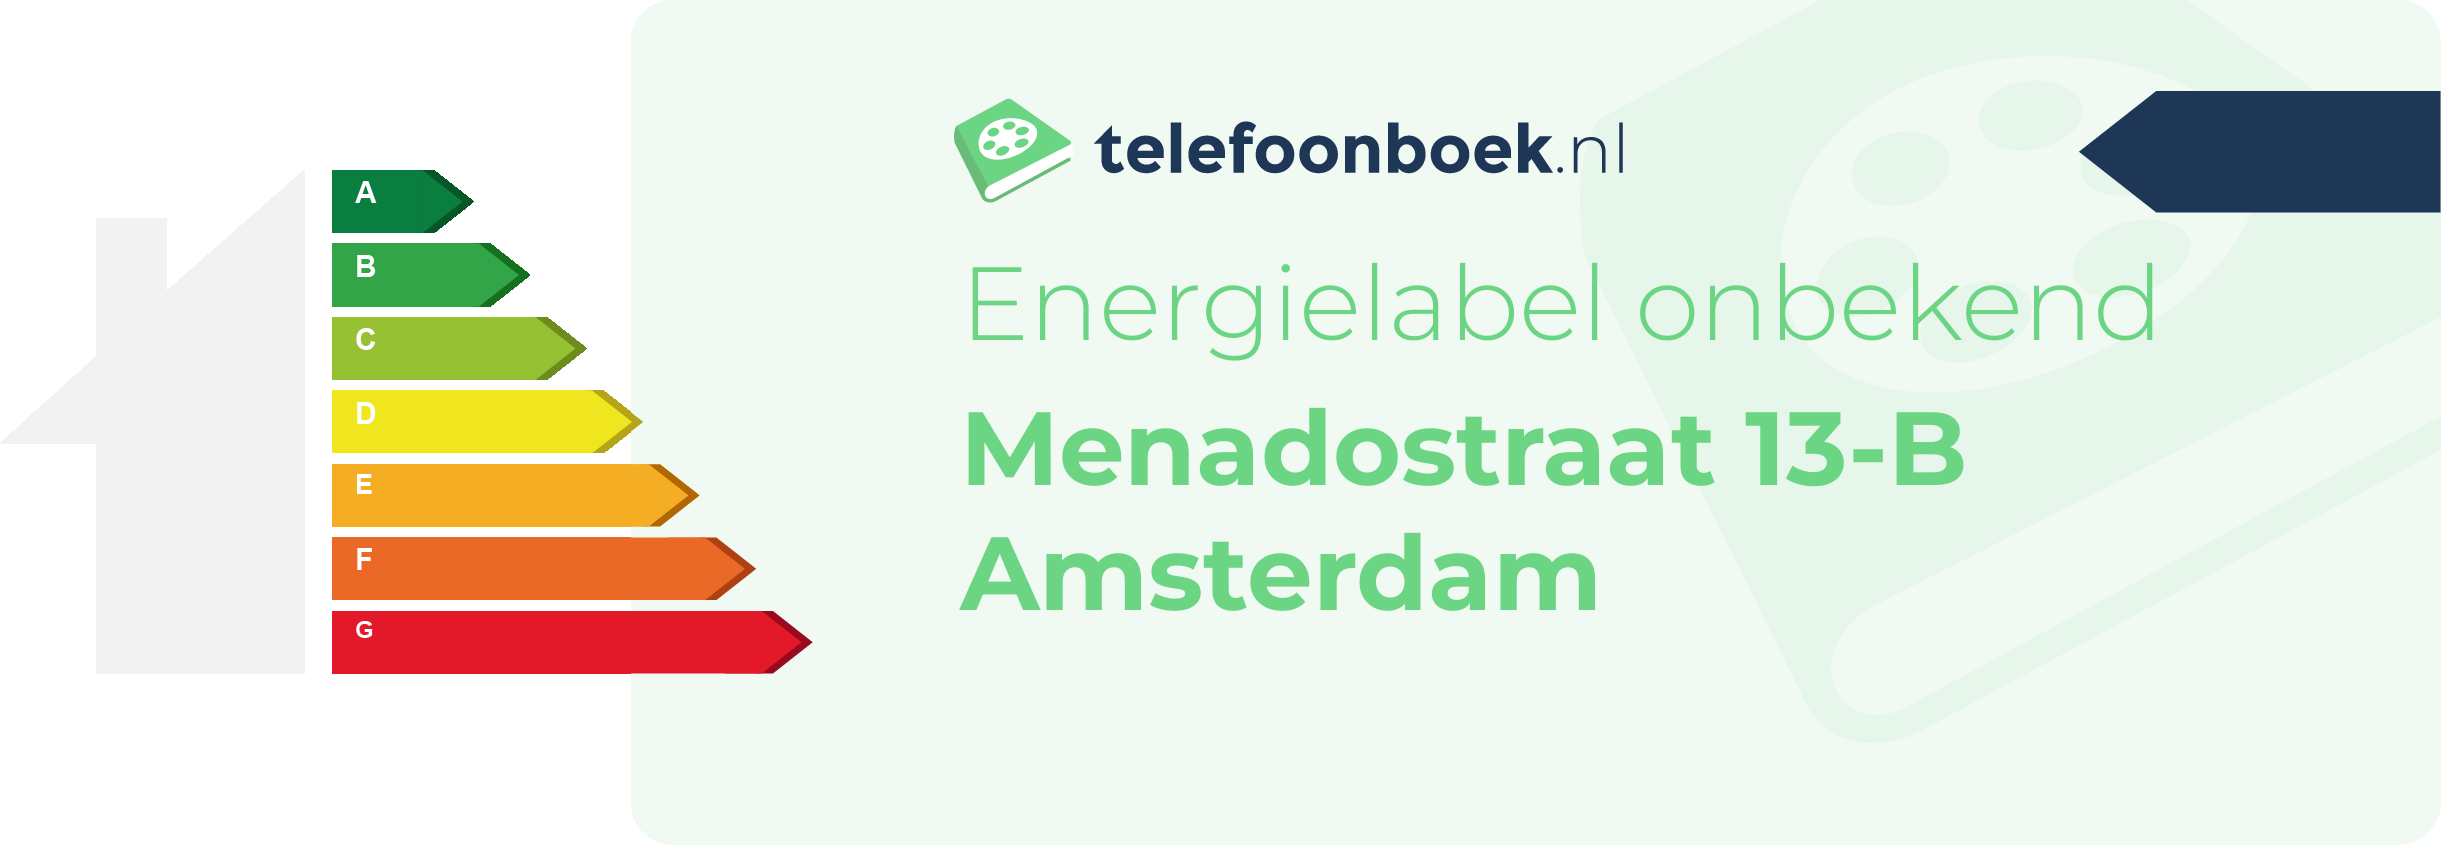 Energielabel Menadostraat 13-B Amsterdam